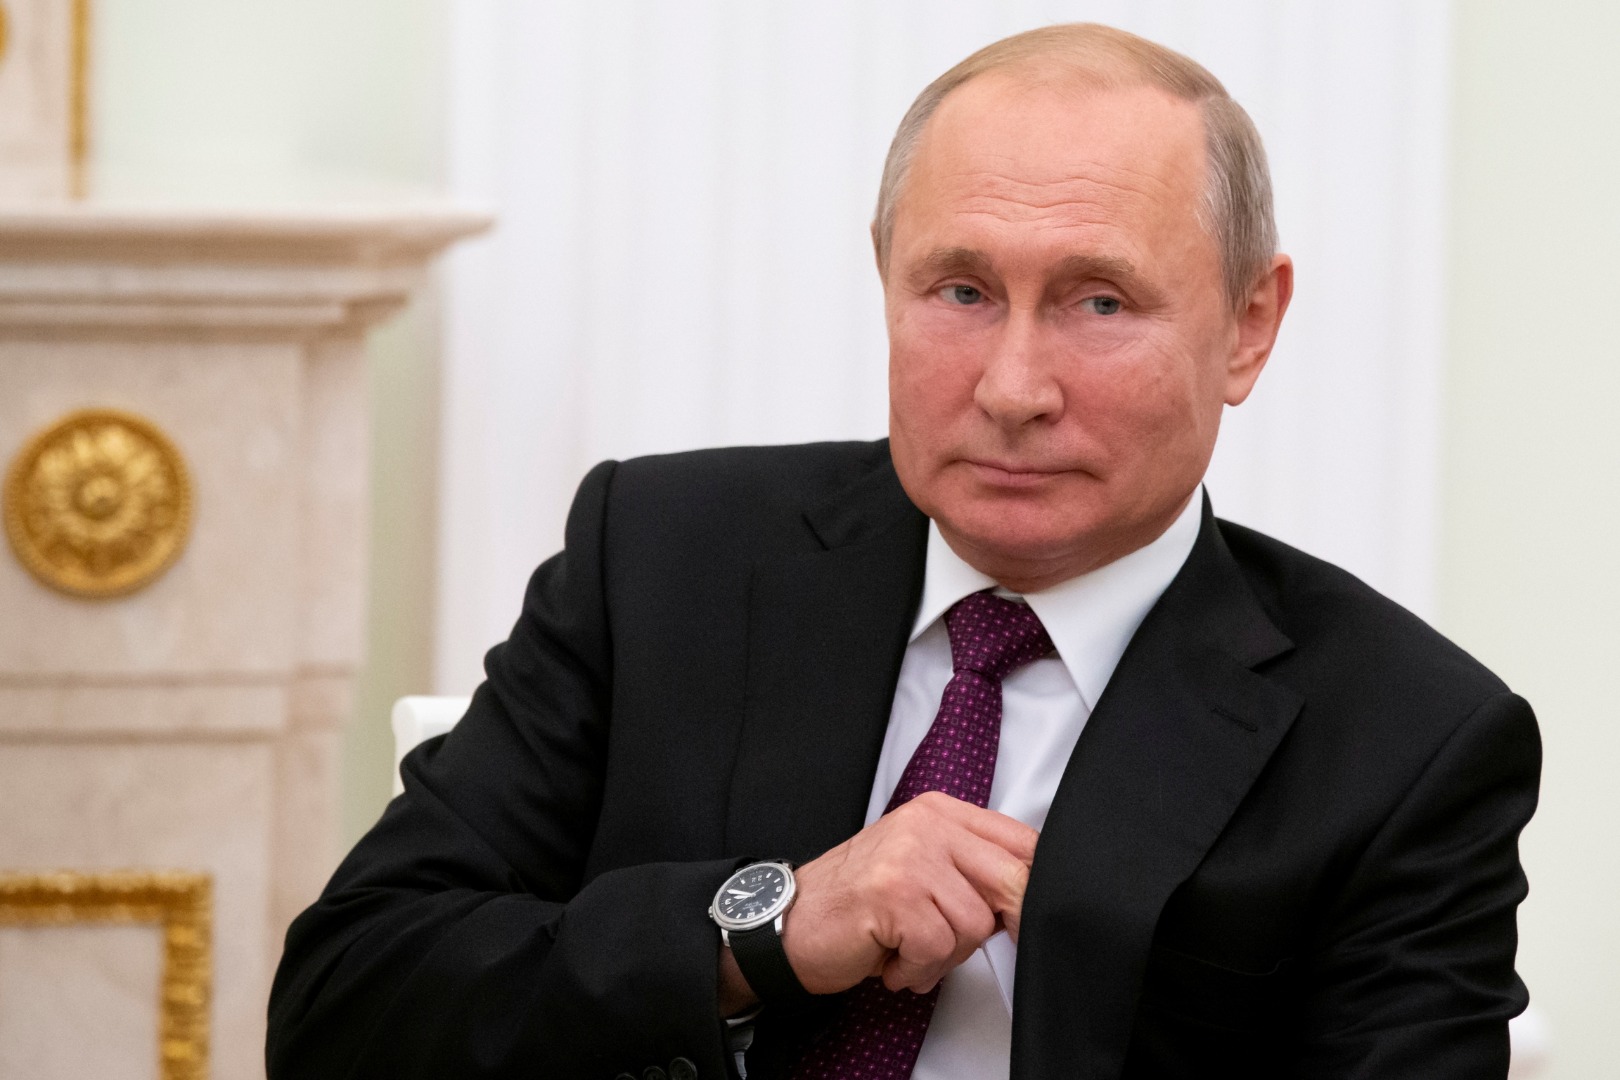 Rusya'da Duma seçimlerini Putin'in partisi kazandı